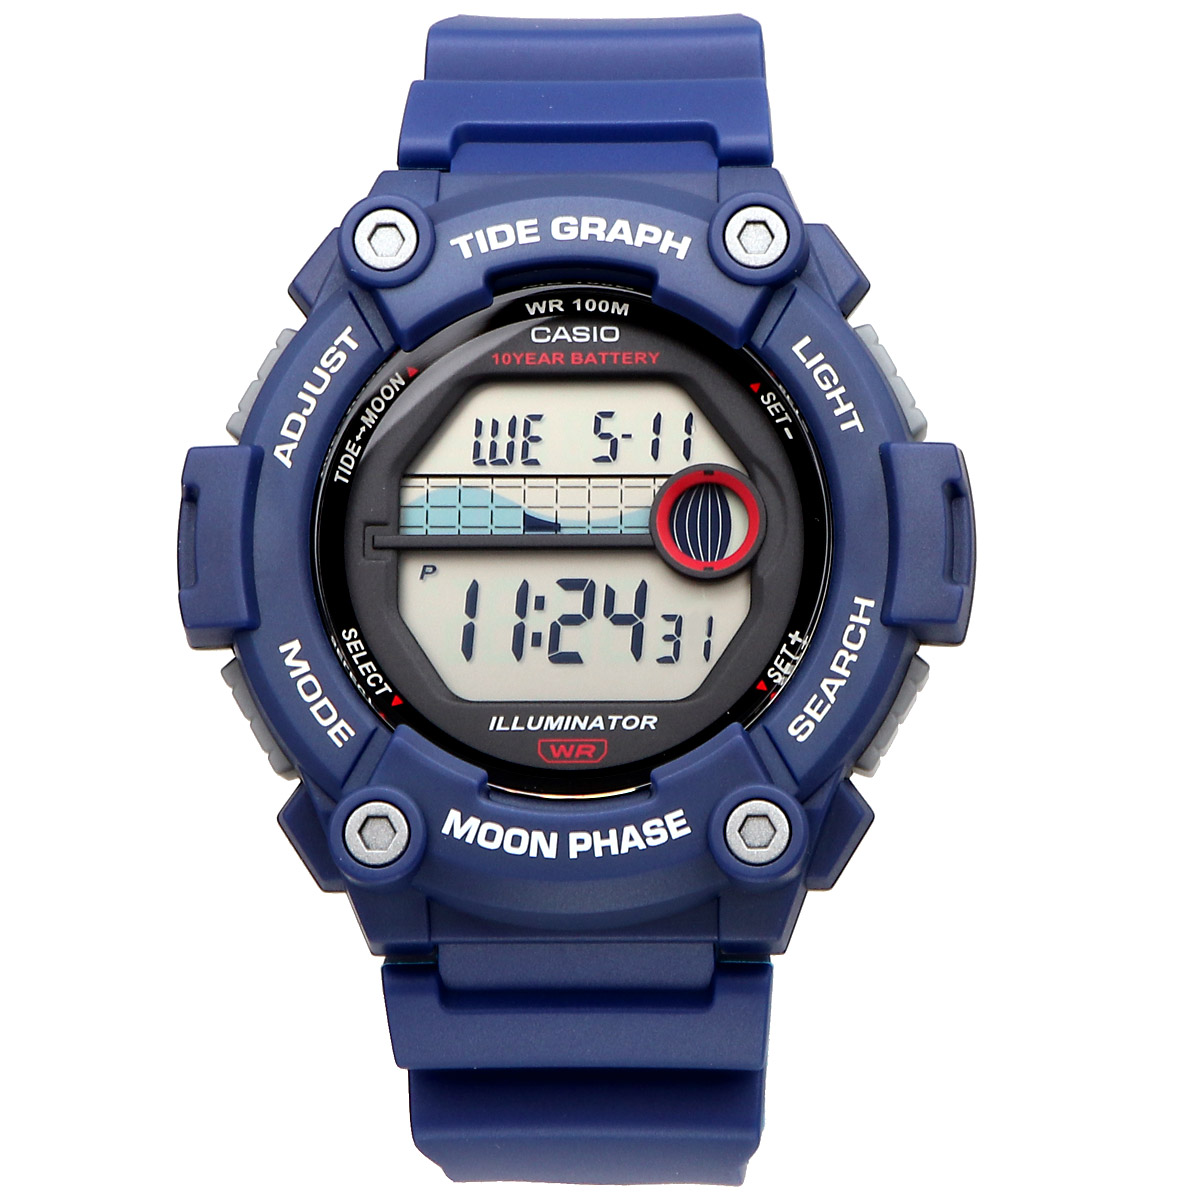 CASIO カシオ 腕時計 メンズ チープカシオ チプカシ 海外モデル タイドグラフ デジタル WS-1300H-2AV